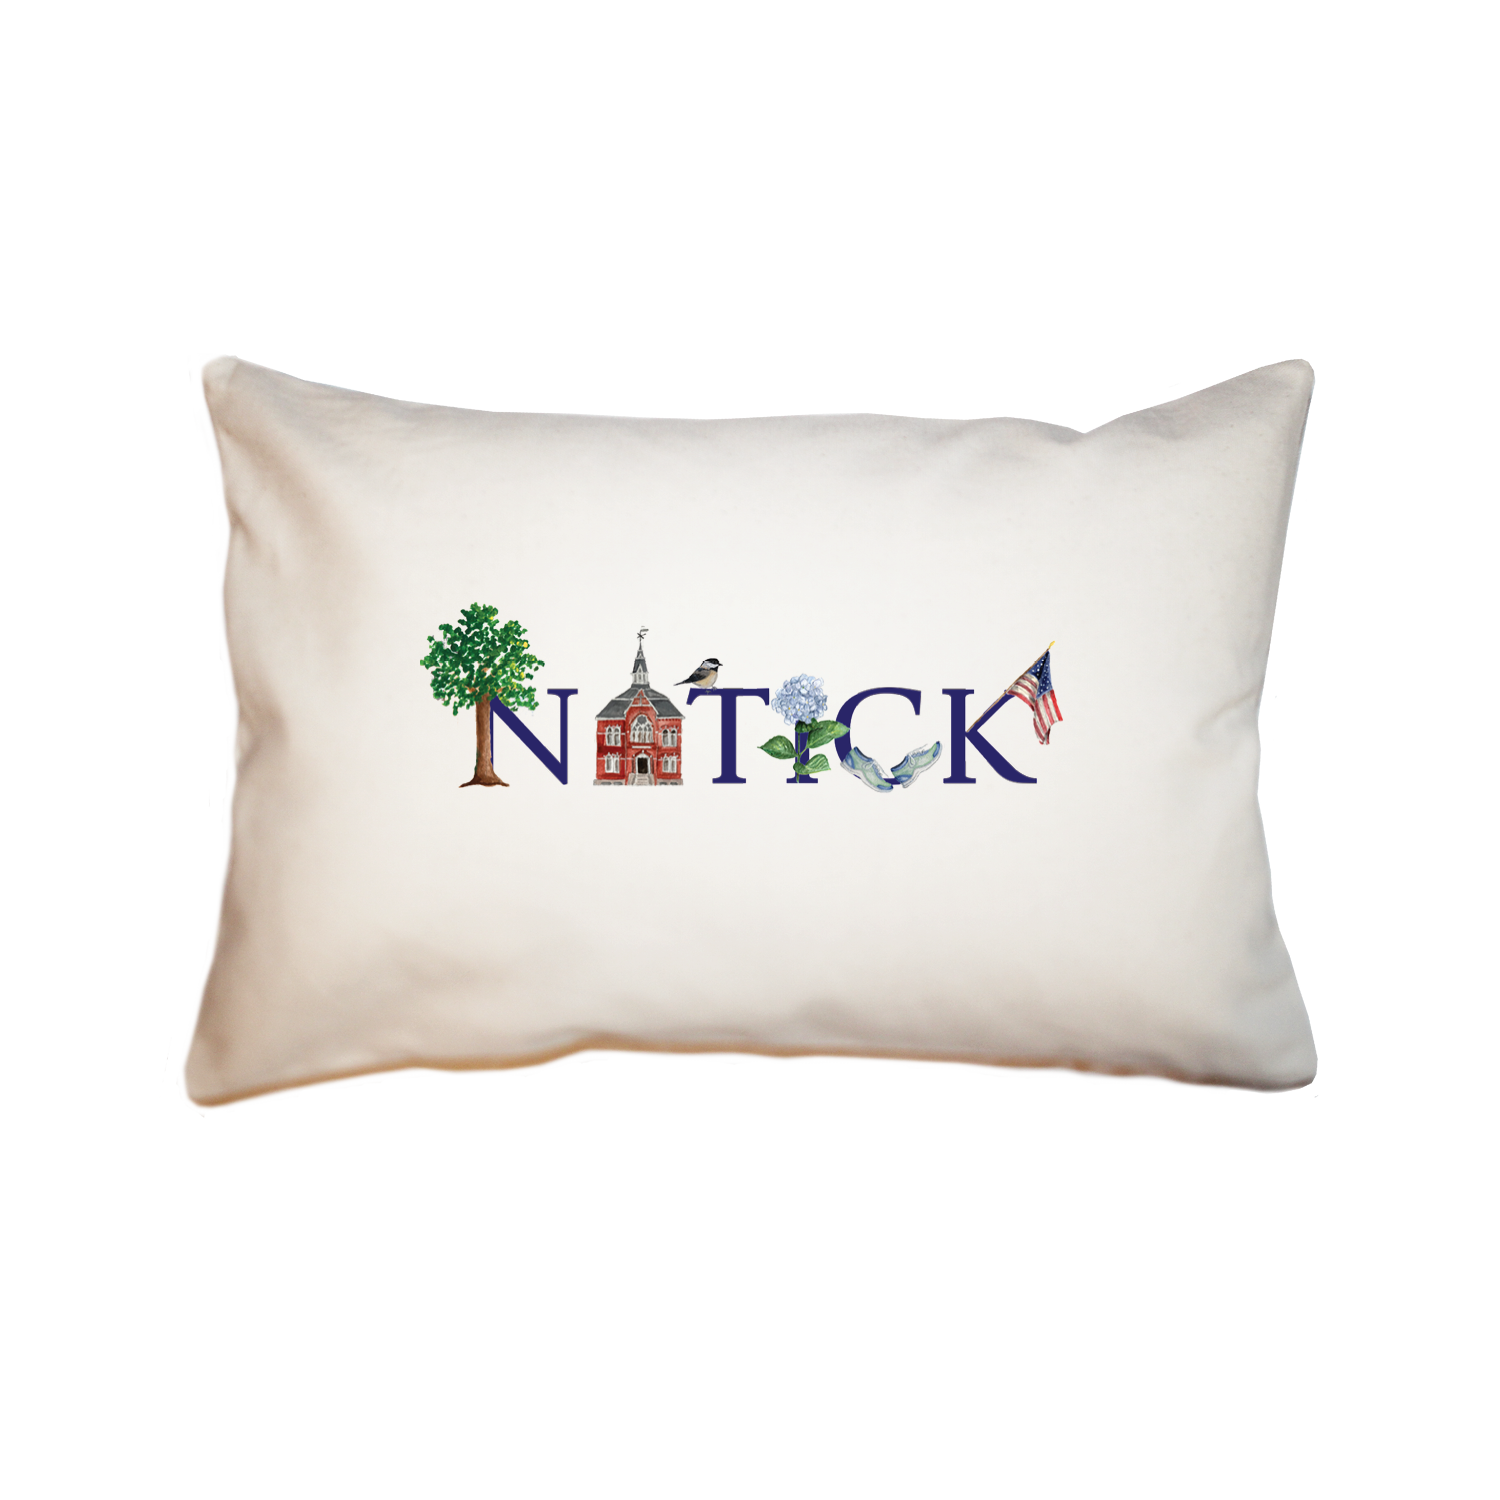 natick large rectangle pillow